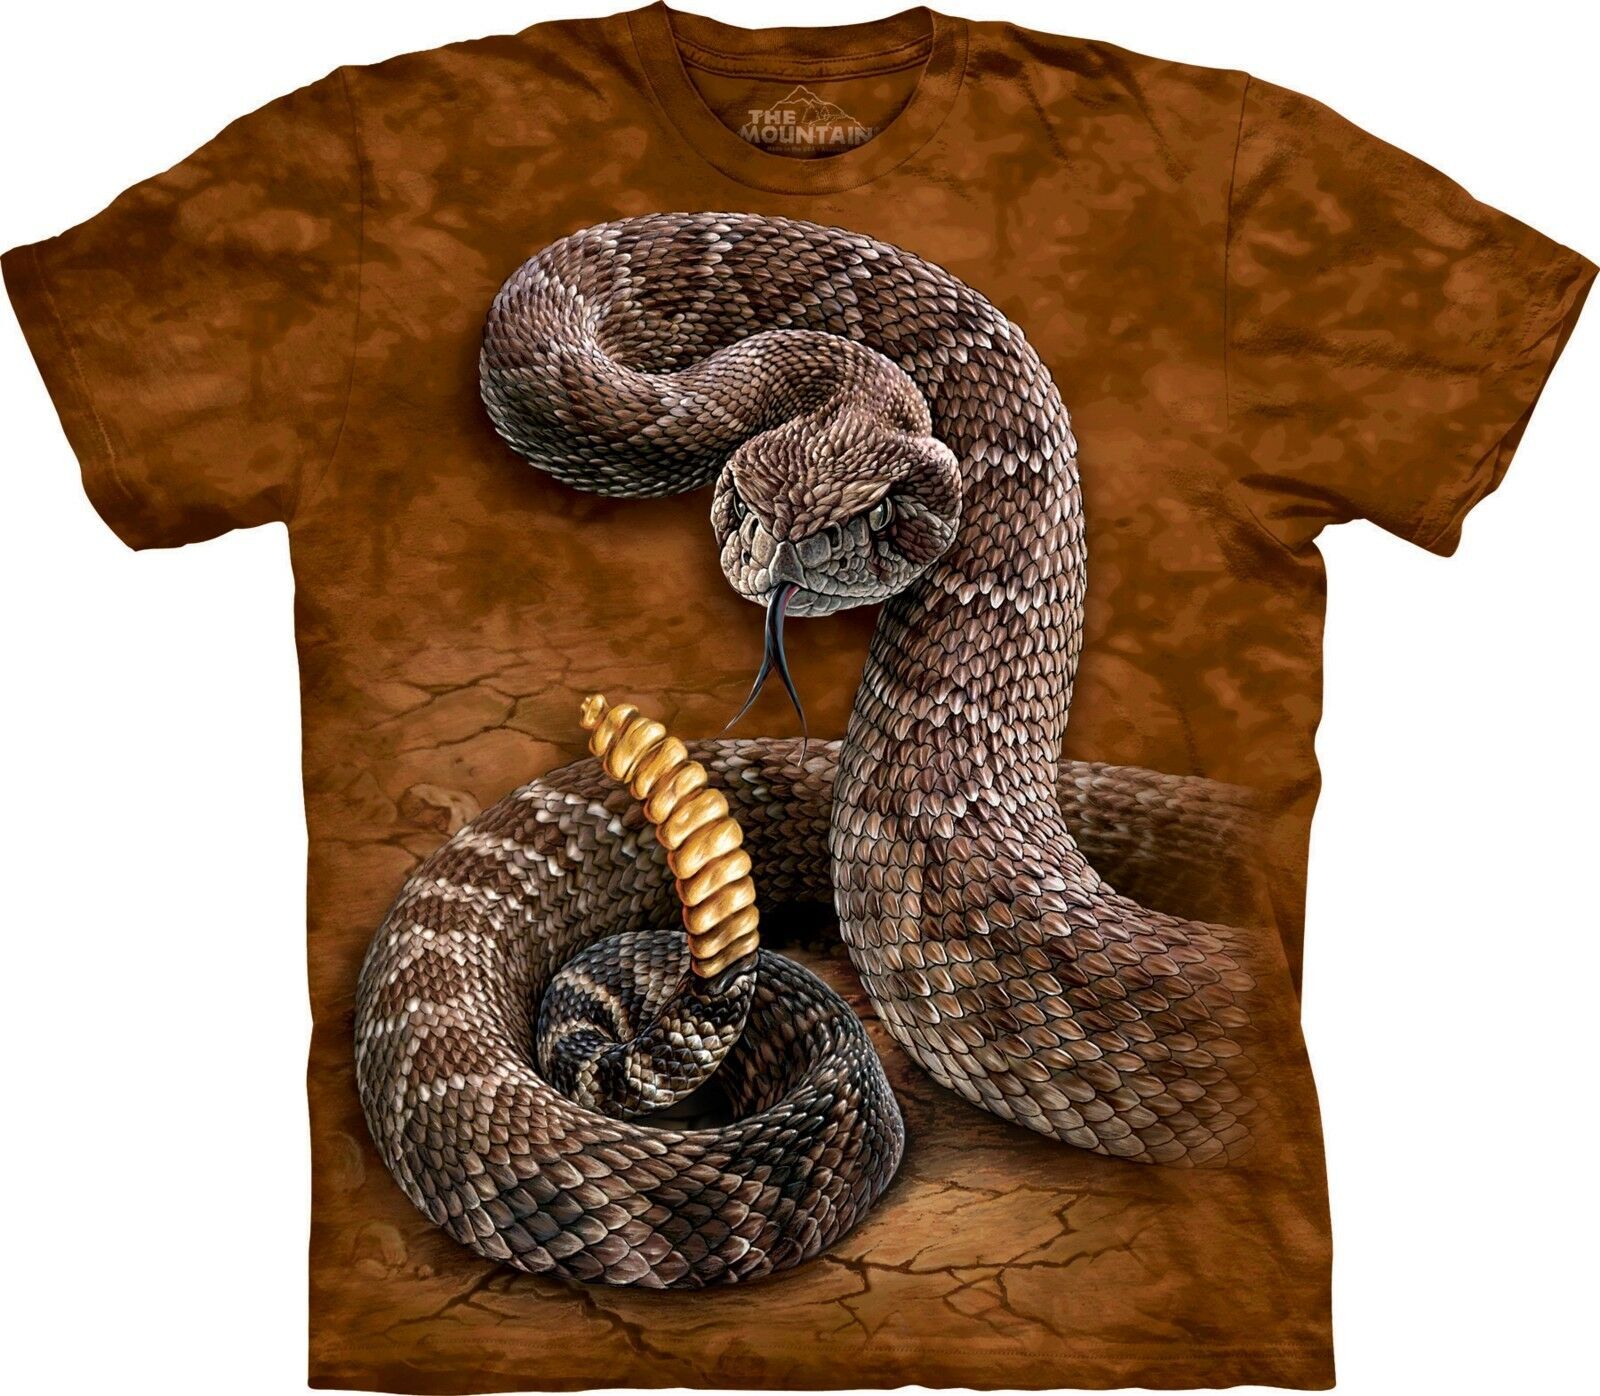 Змея на футболке